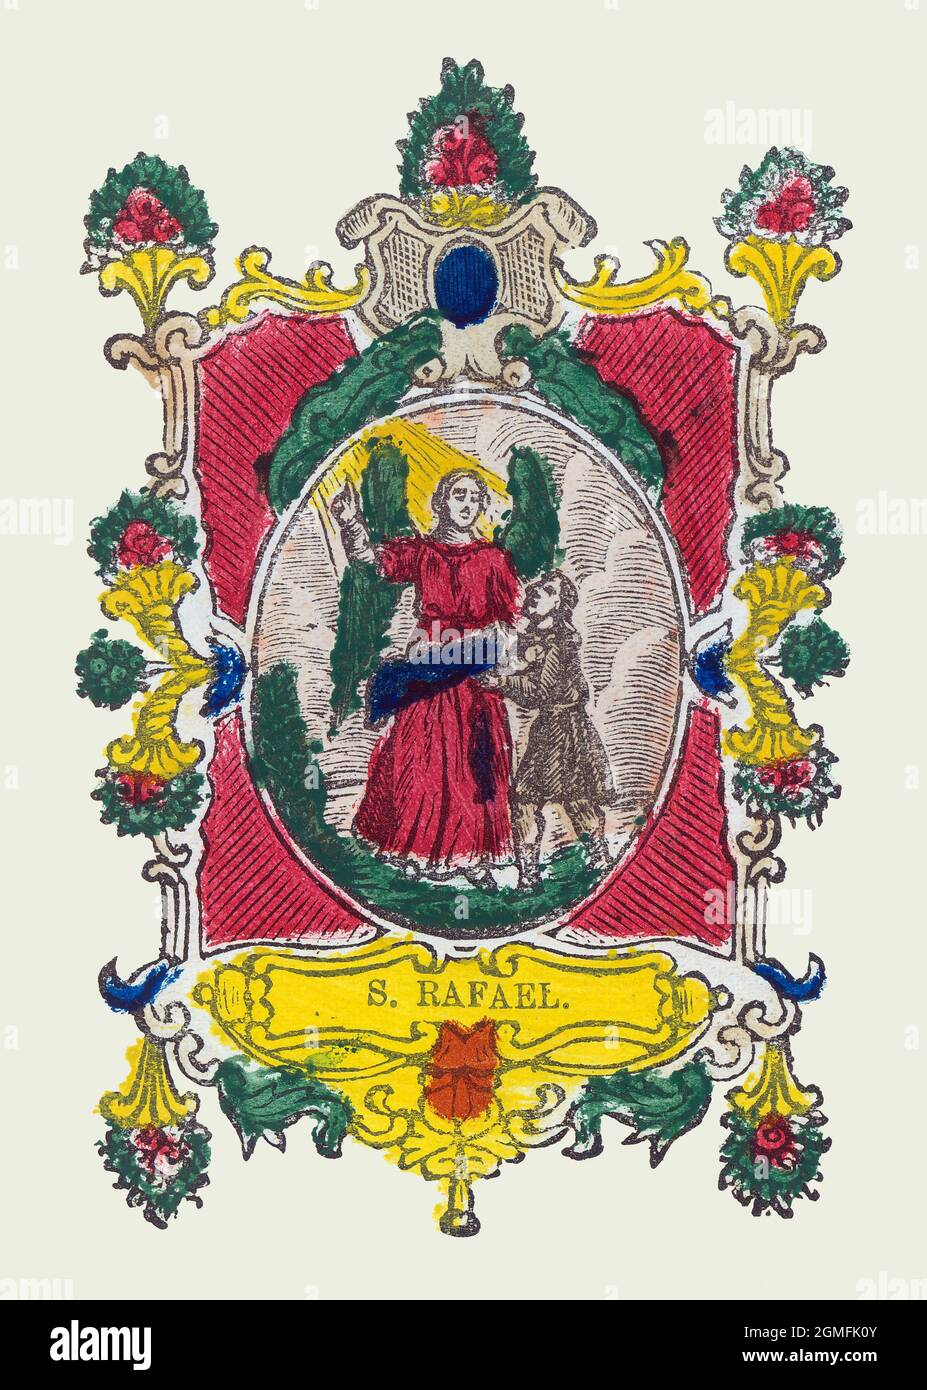 San Rafael, arcángel responsable de las curaciones en la mayoría de religiones abrahámicas. Estampería popular del siglo XVIII, pintado a mano. Stock Photo